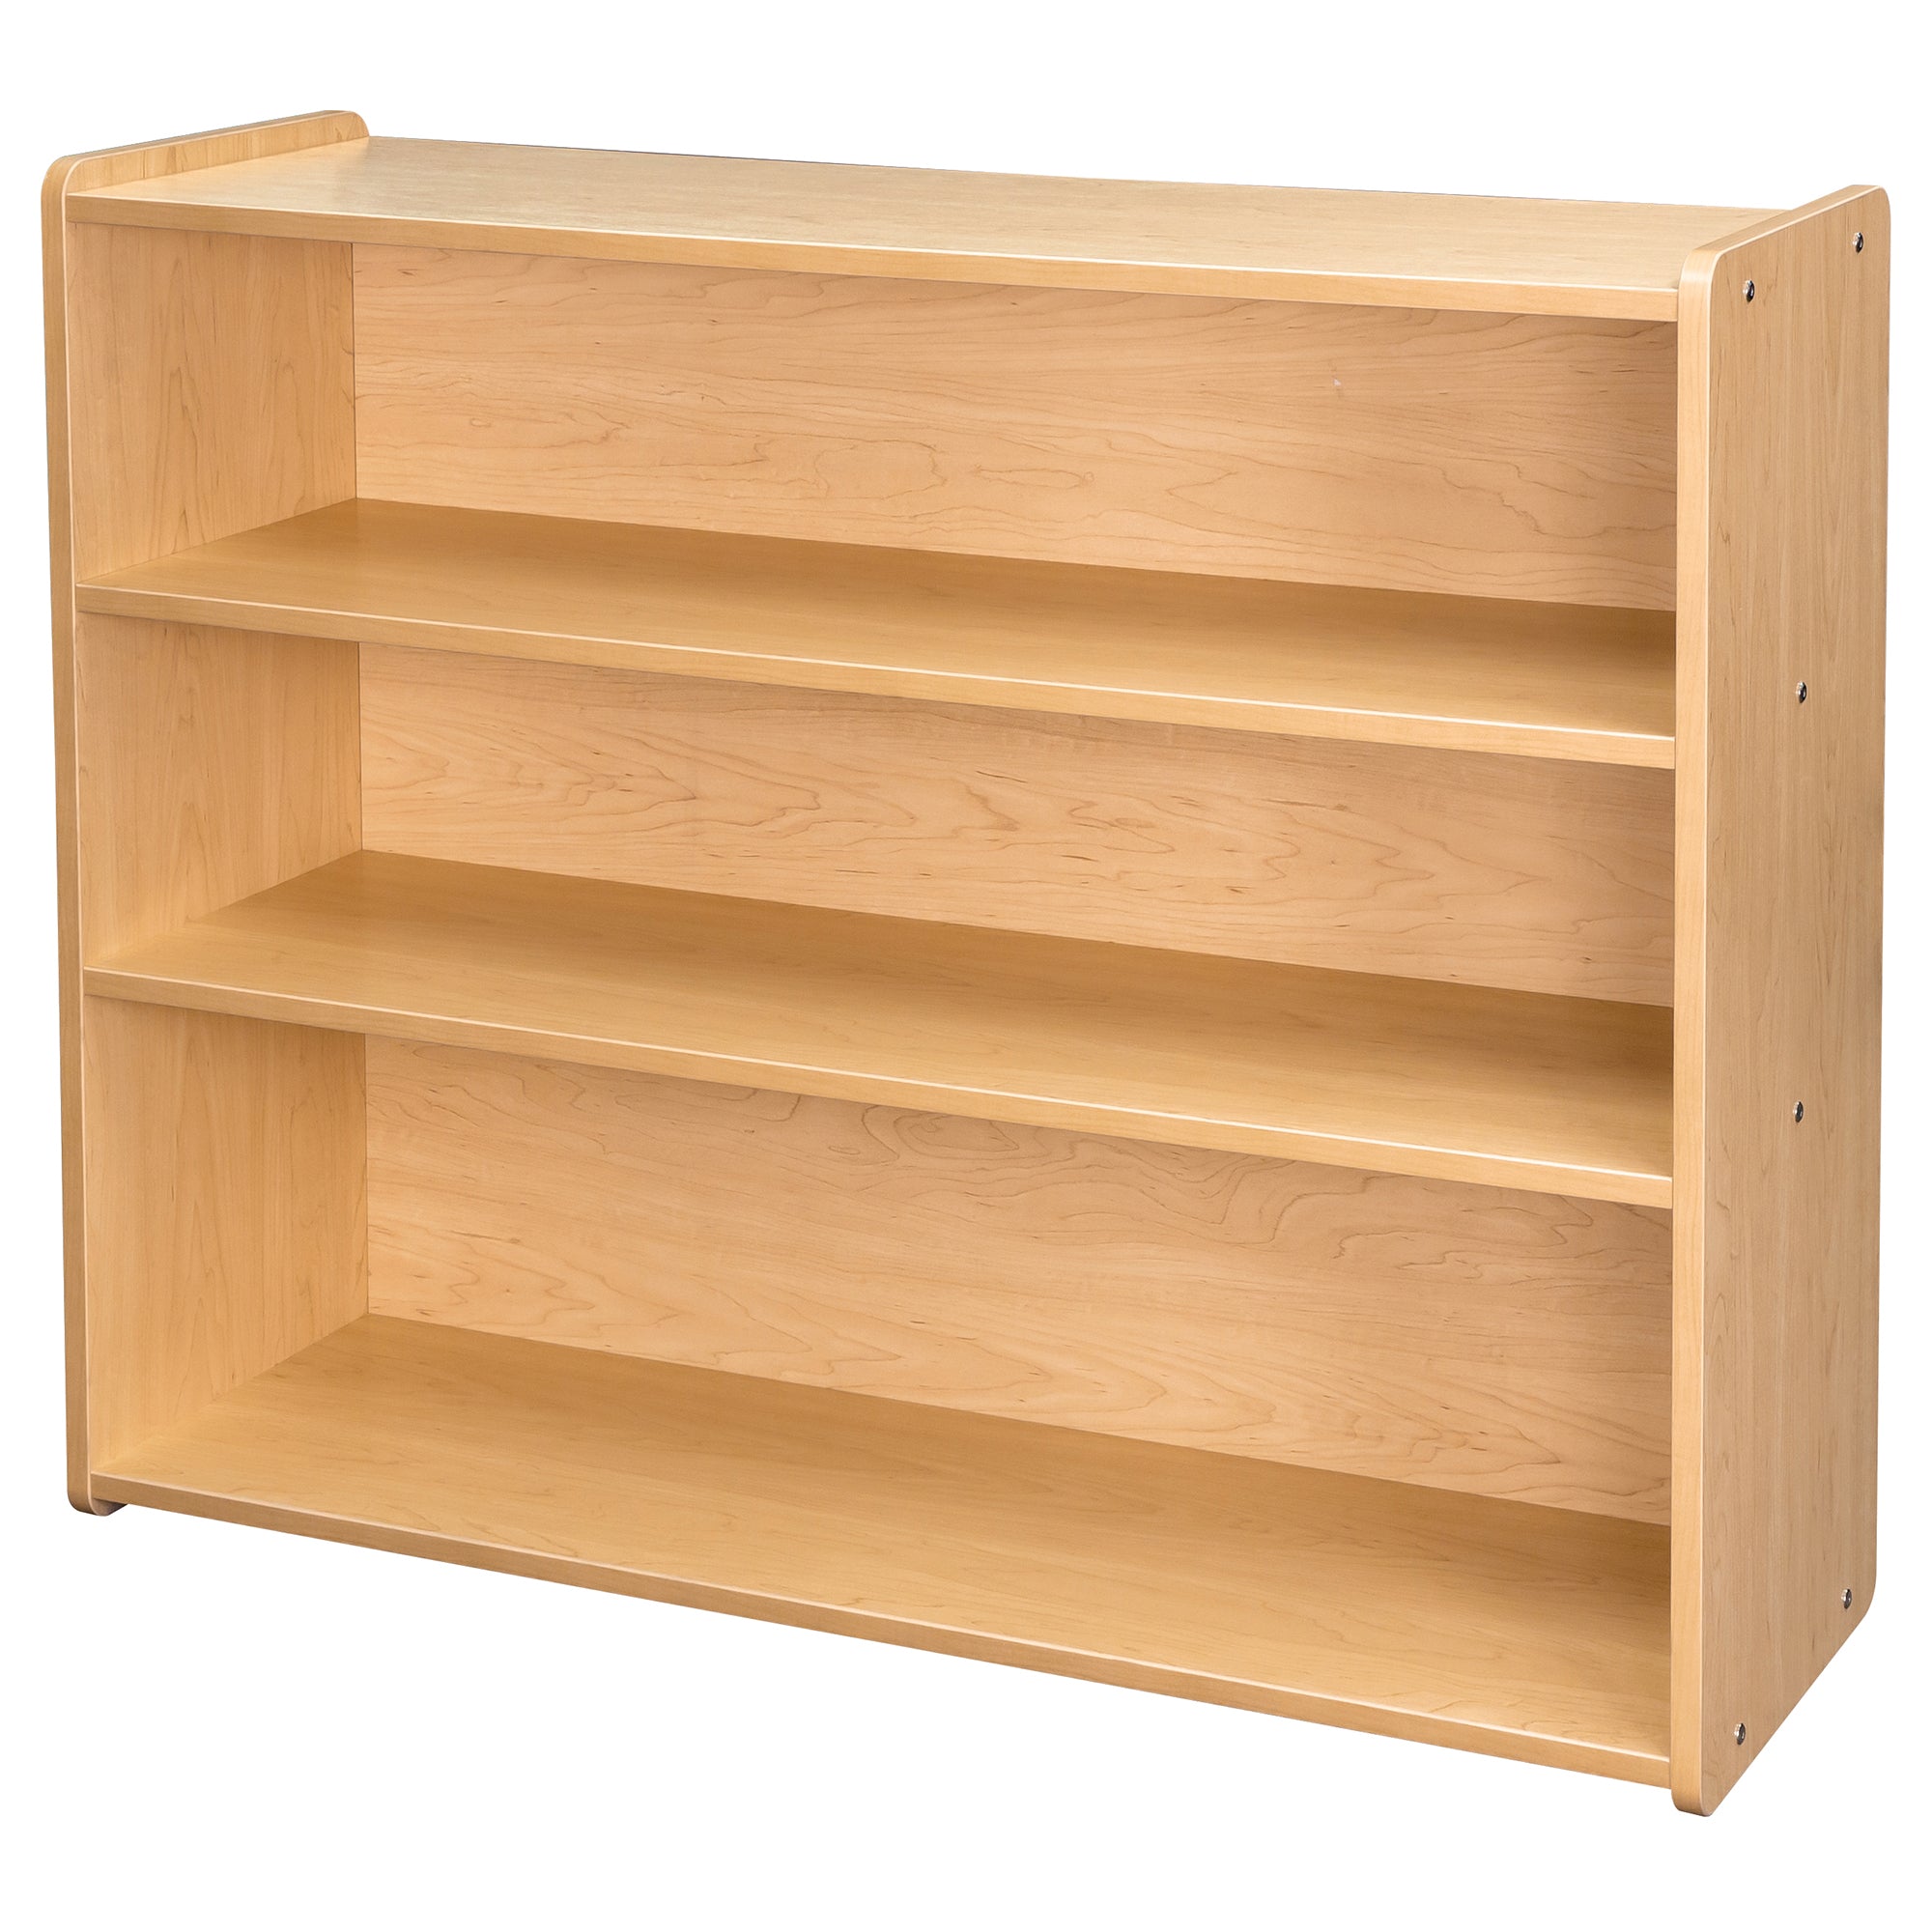 School Age Shelf Storage 46" Wide